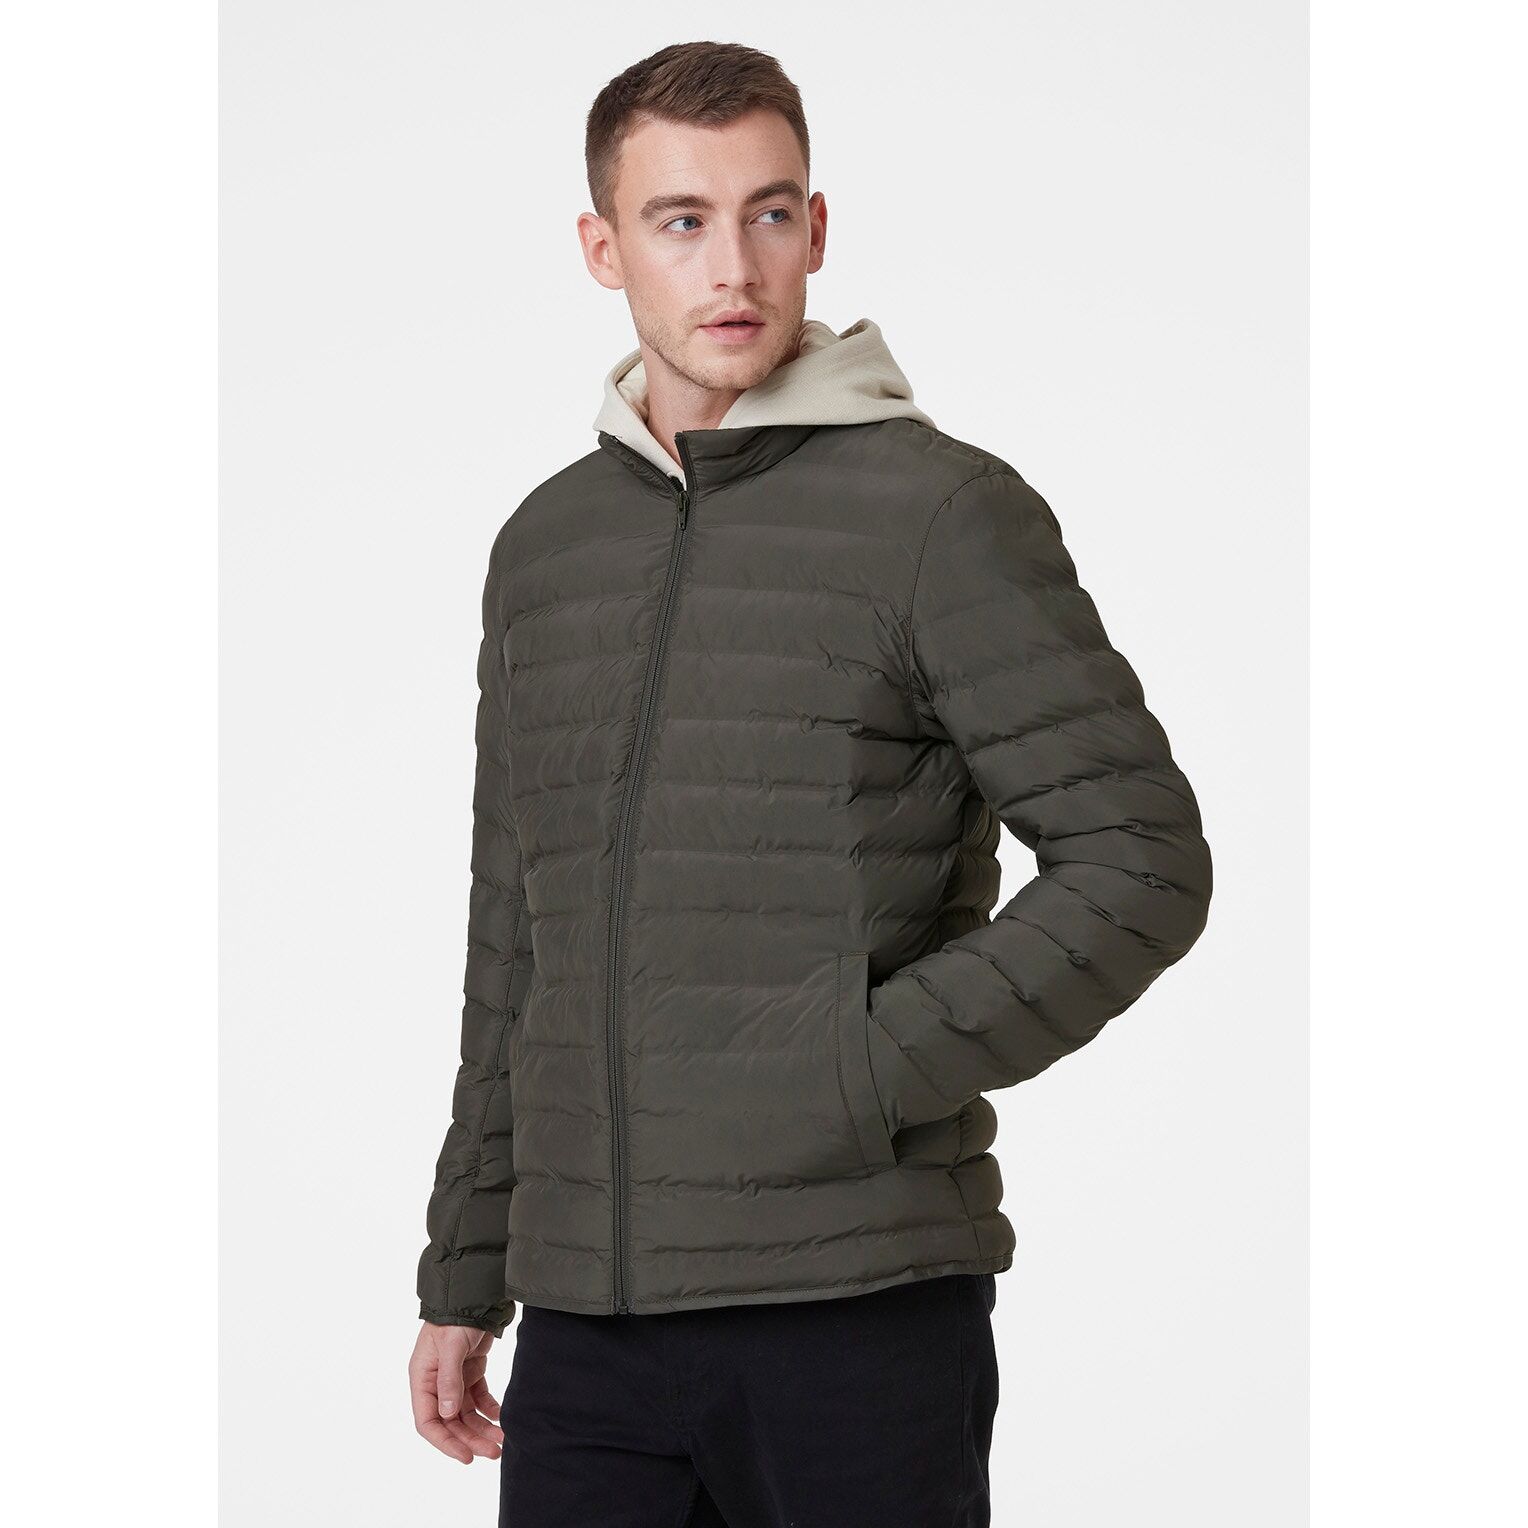 Helly Hansen Urban Liner - Hybrid jacket - Men's